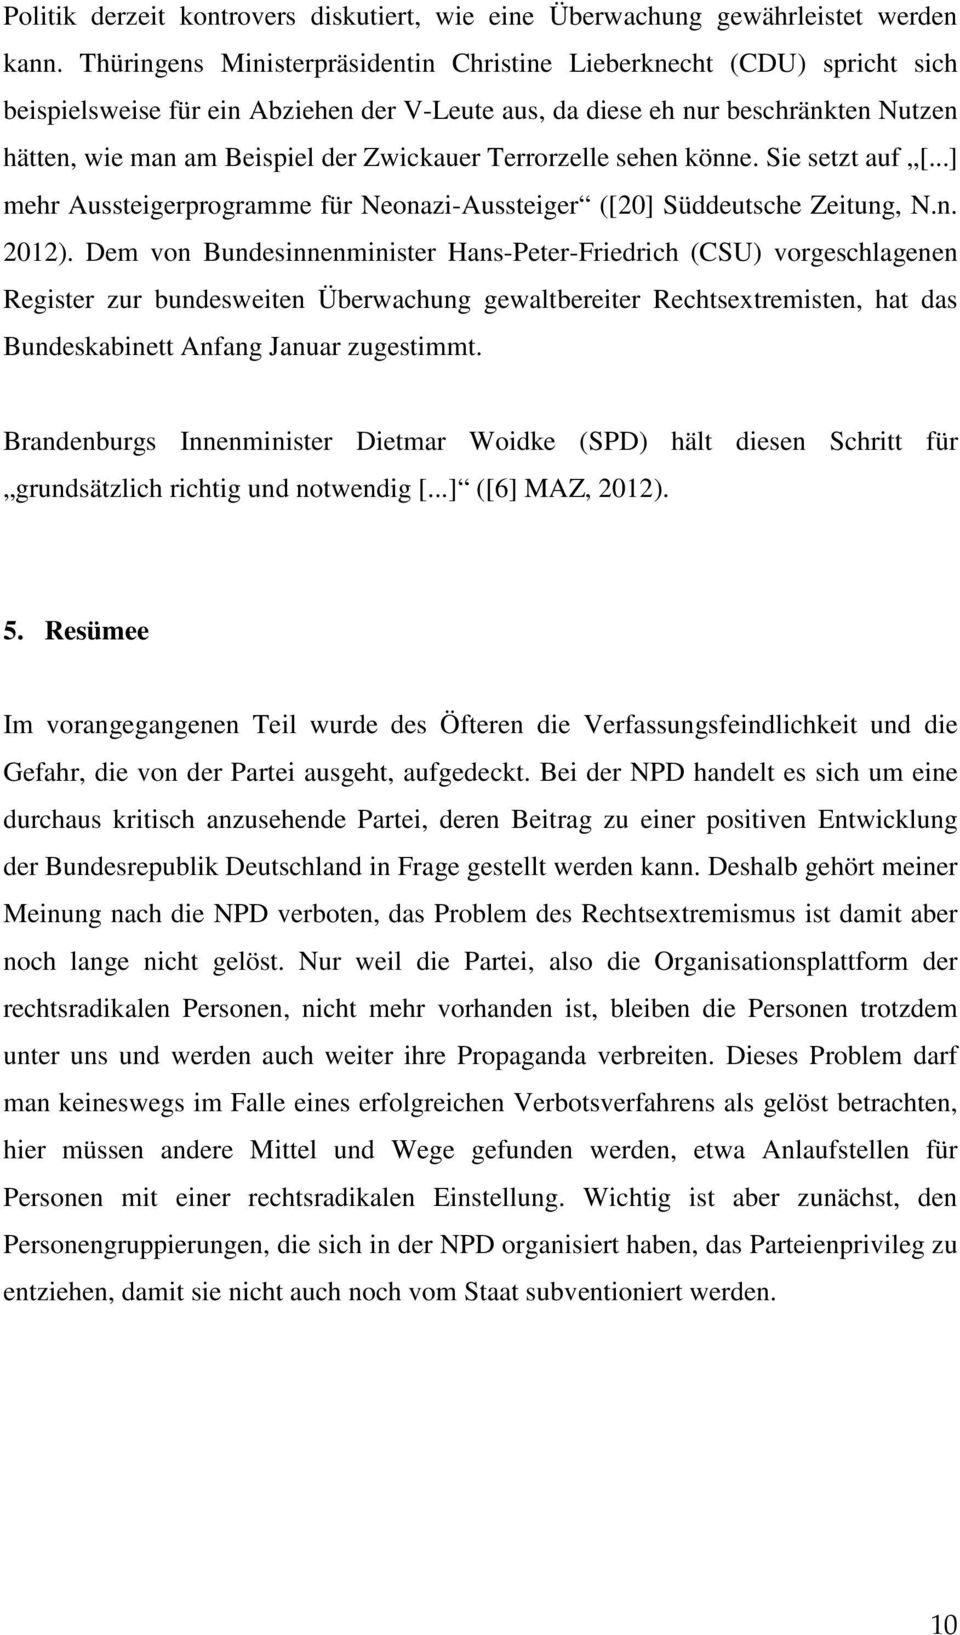 Terrorzelle sehen könne. Sie setzt auf [...] mehr Aussteigerprogramme für Neonazi-Aussteiger ([20] Süddeutsche Zeitung, N.n. 2012).